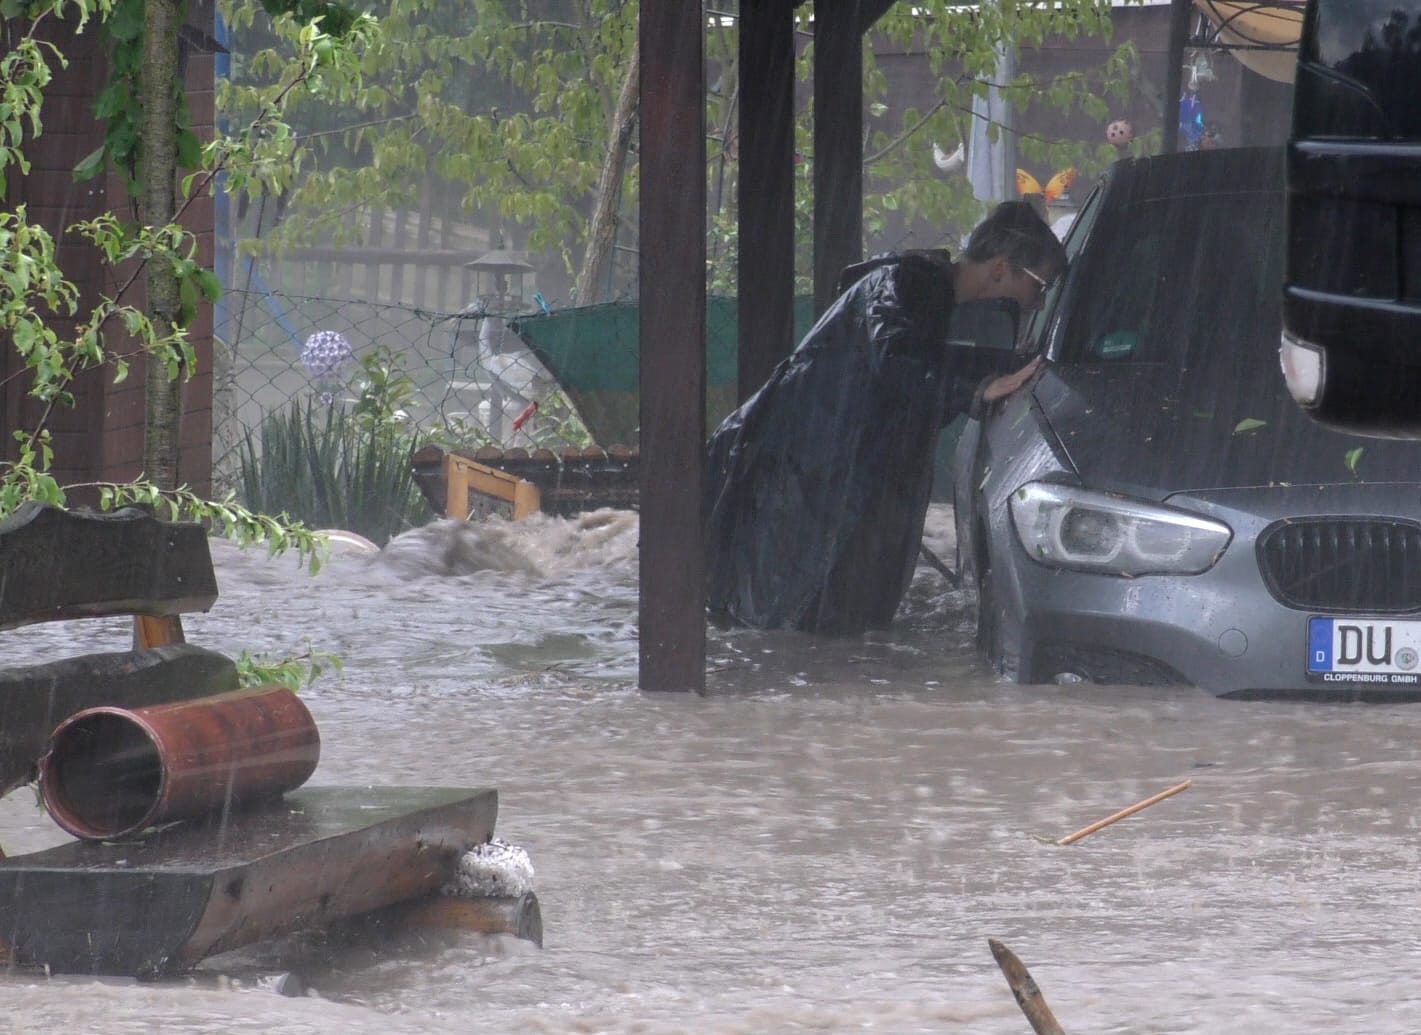 Plaue: Ein Mann steht im vom Wasser überfluteten Garten neben einem Auto.